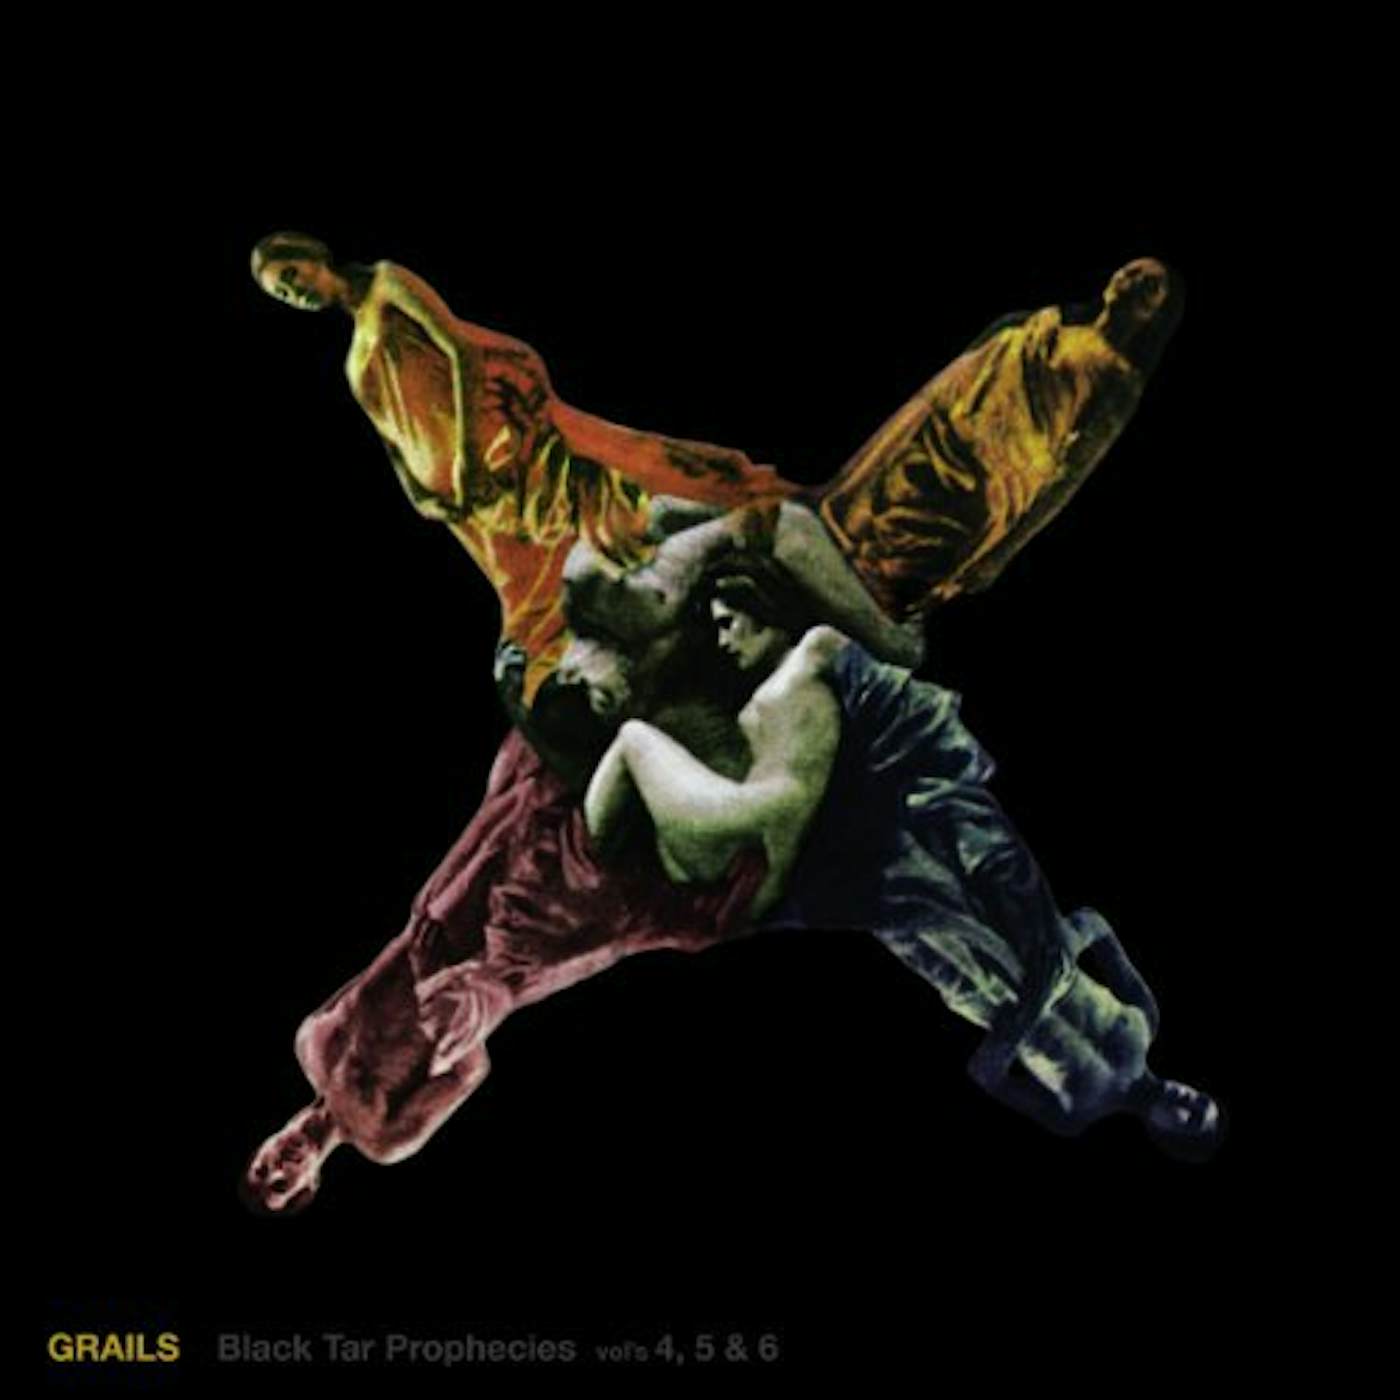 Grails BLACK TAR PROPHECIES 4 5 & 6 Vinyl Record